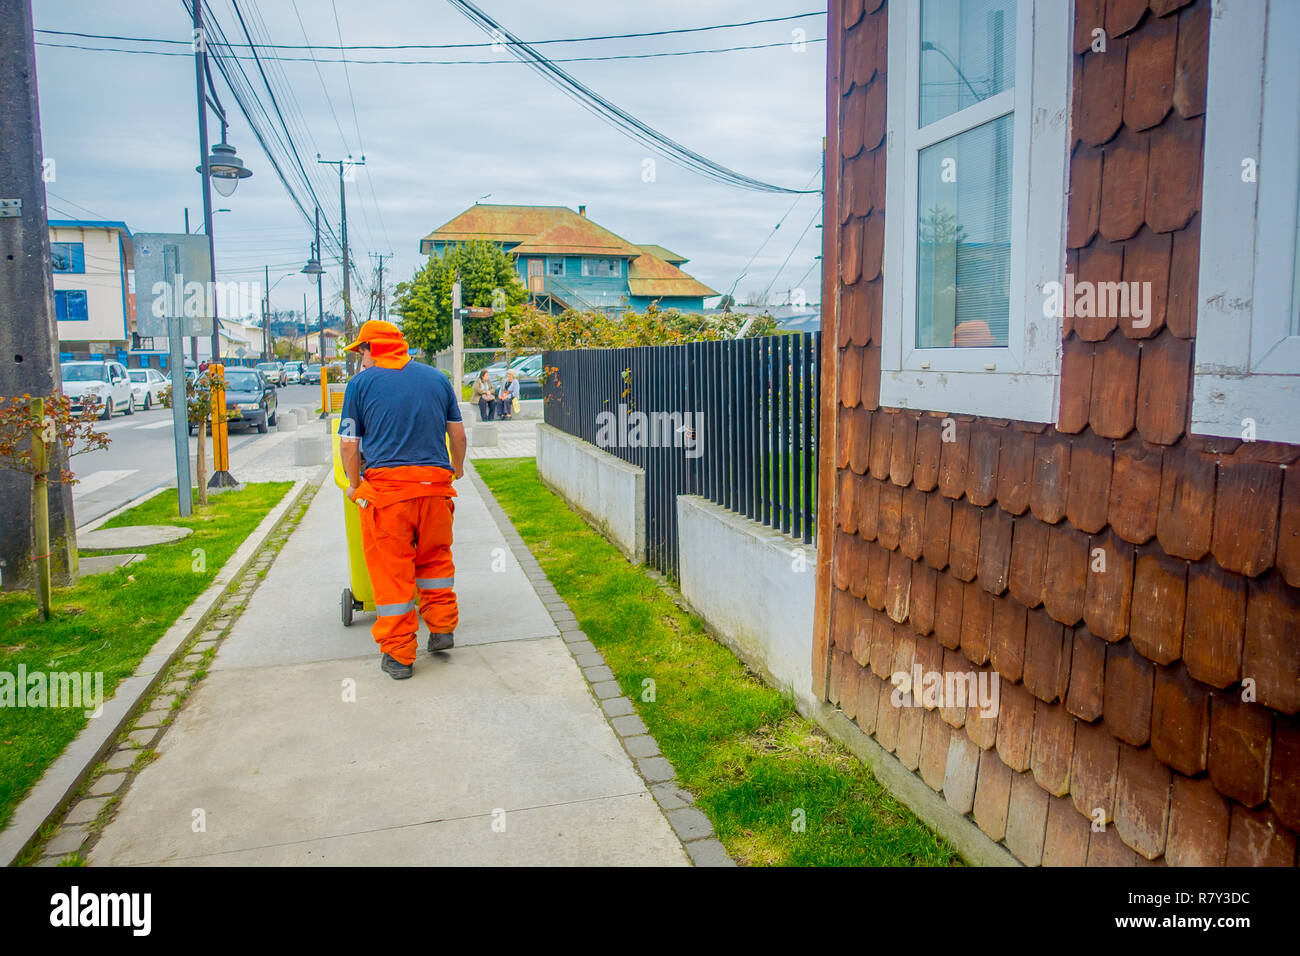 PUERTO VARAS, CHILI, septembre, 23, 2018 : homme non identifié portant des uniformes orange et de marche dans le trottoir près d'un bâtiment en bois situé à Puerto Varas au Chili Banque D'Images